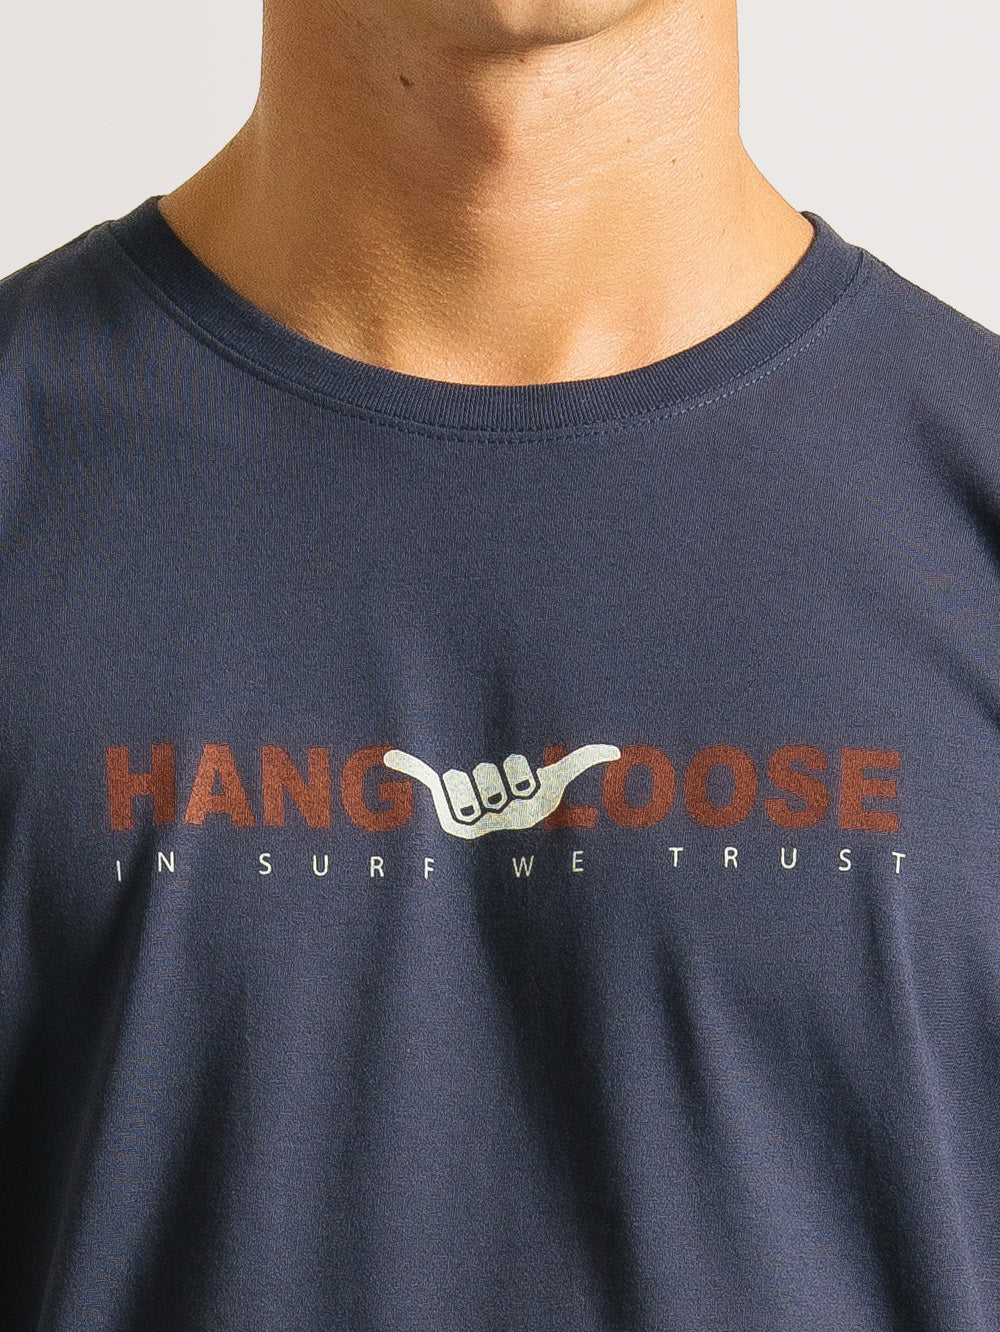 Camiseta Hang Loose  Hawaii Marinho